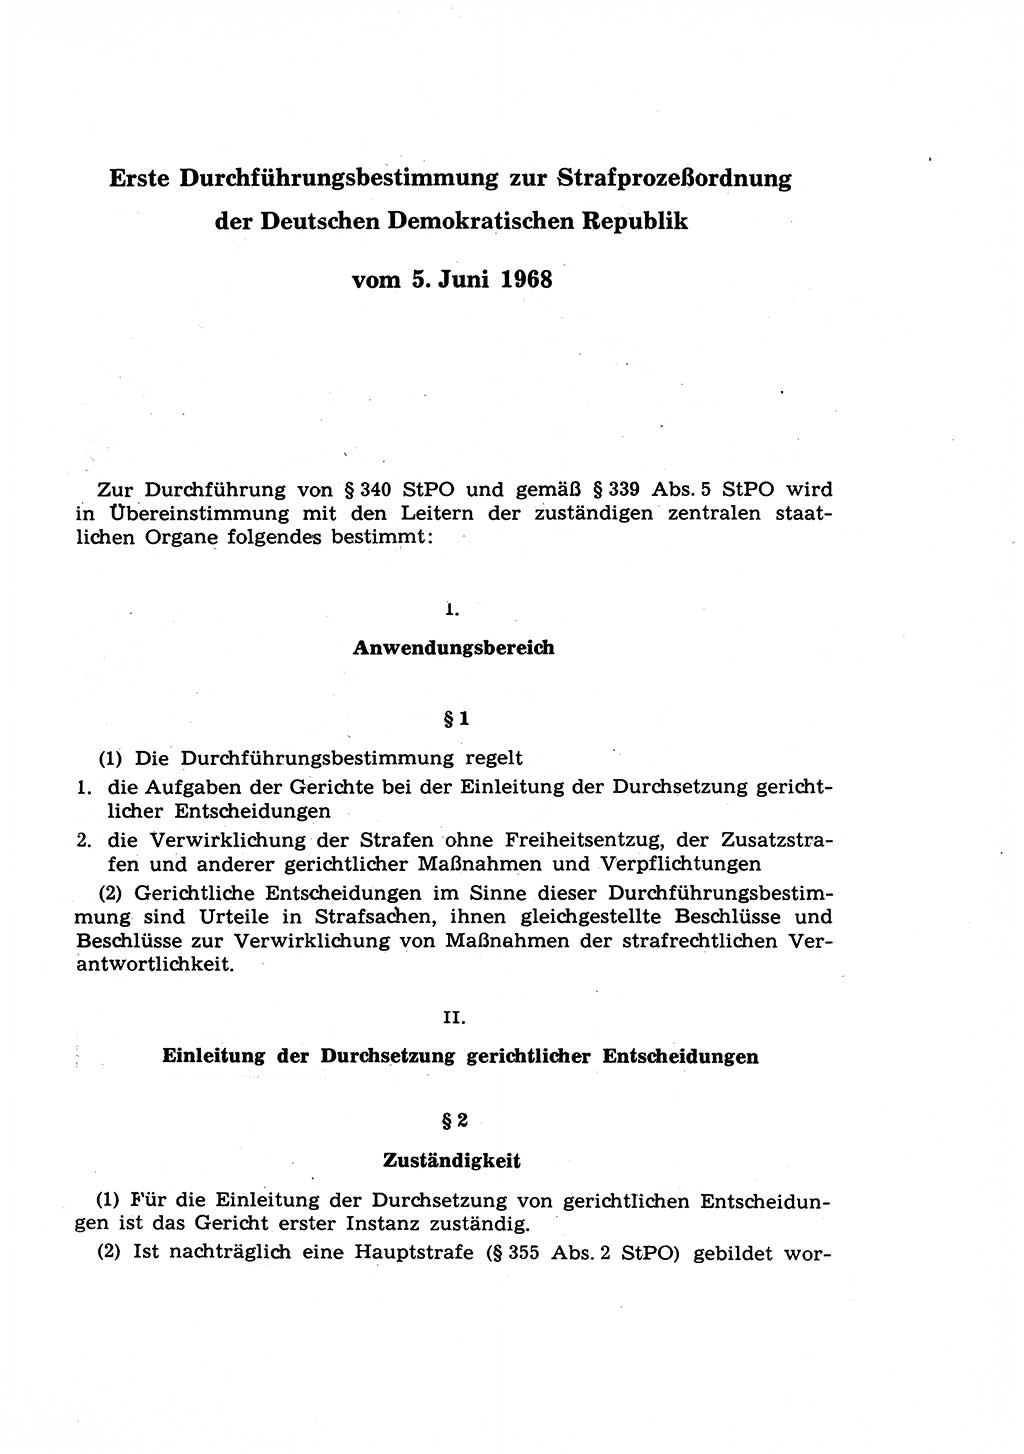 Strafprozeßrecht der DDR (Deutsche Demokratische Republik), Lehrkommentar zur Strafprozeßordnung (StPO) 1968, Seite 429 (Strafprozeßr. DDR Lehrkomm. StPO 19688, S. 429)